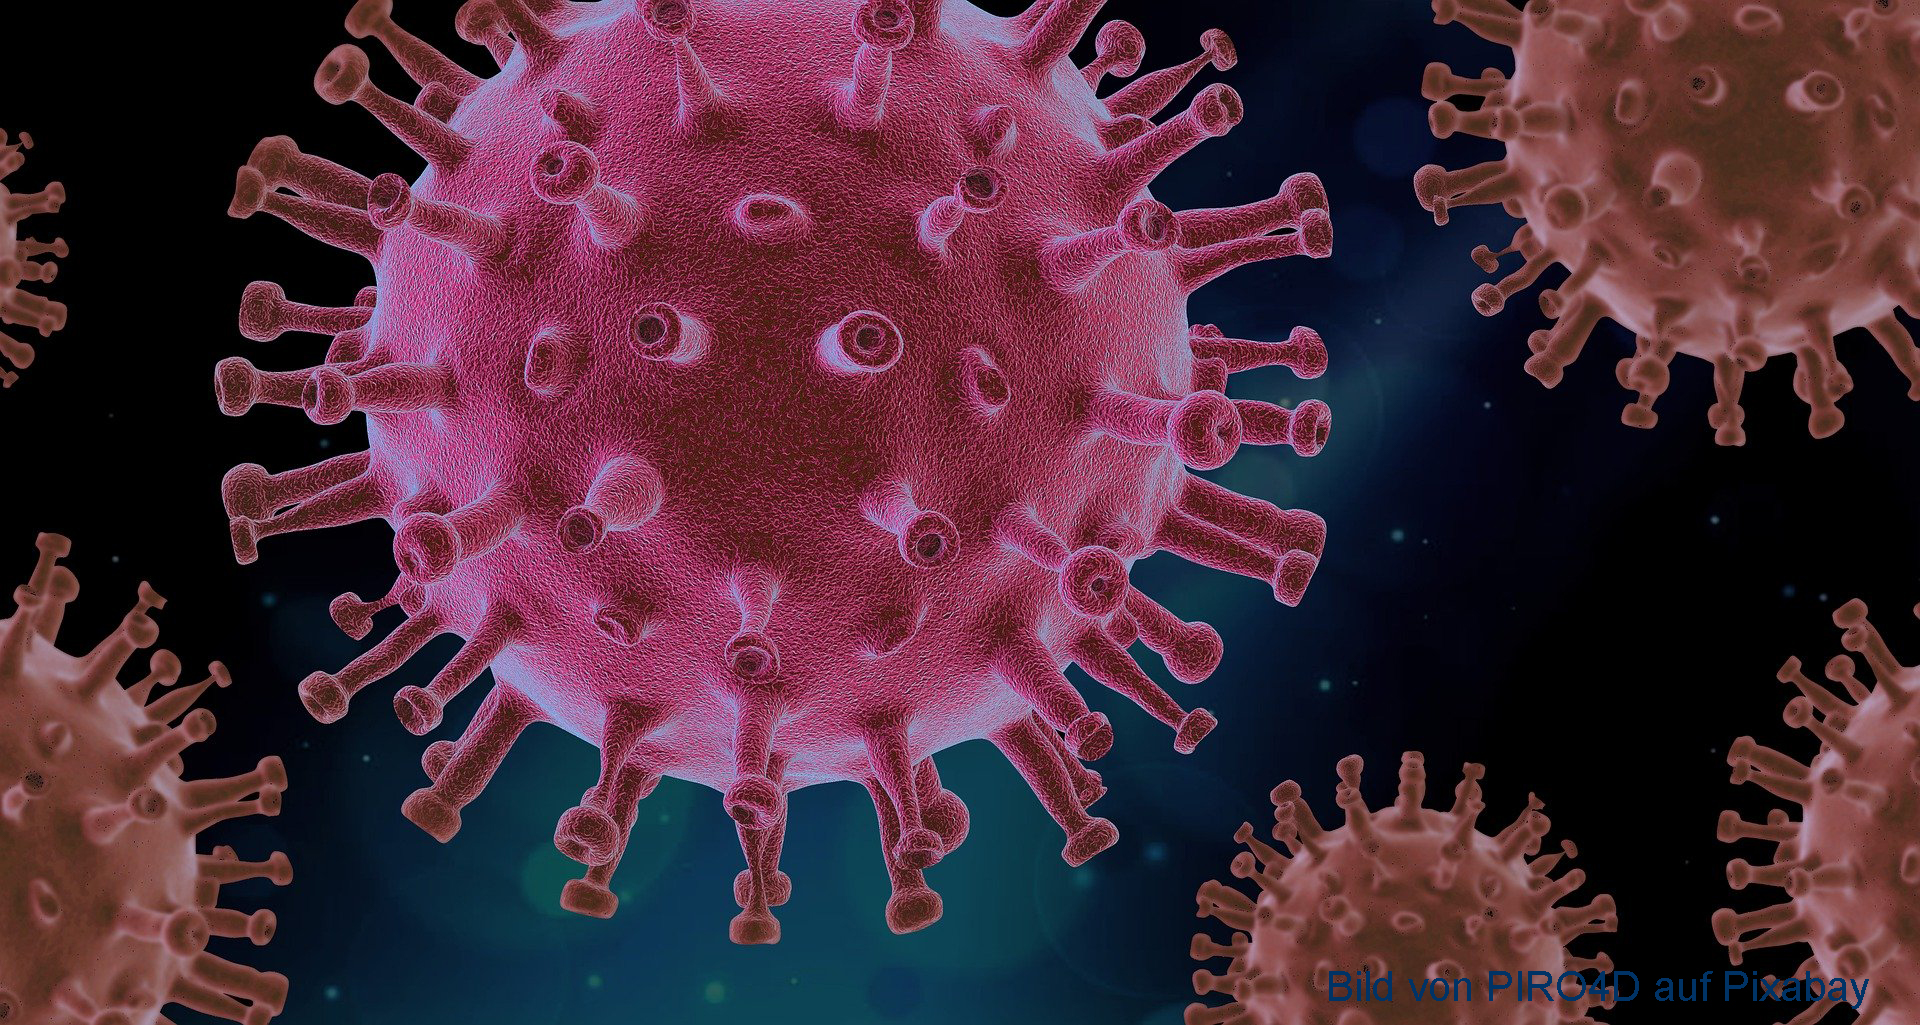 Das Bild zeigt das Coronavirus. Es sieht aus wie ein Ball, auf dem viele kleine Fühler sitzen.